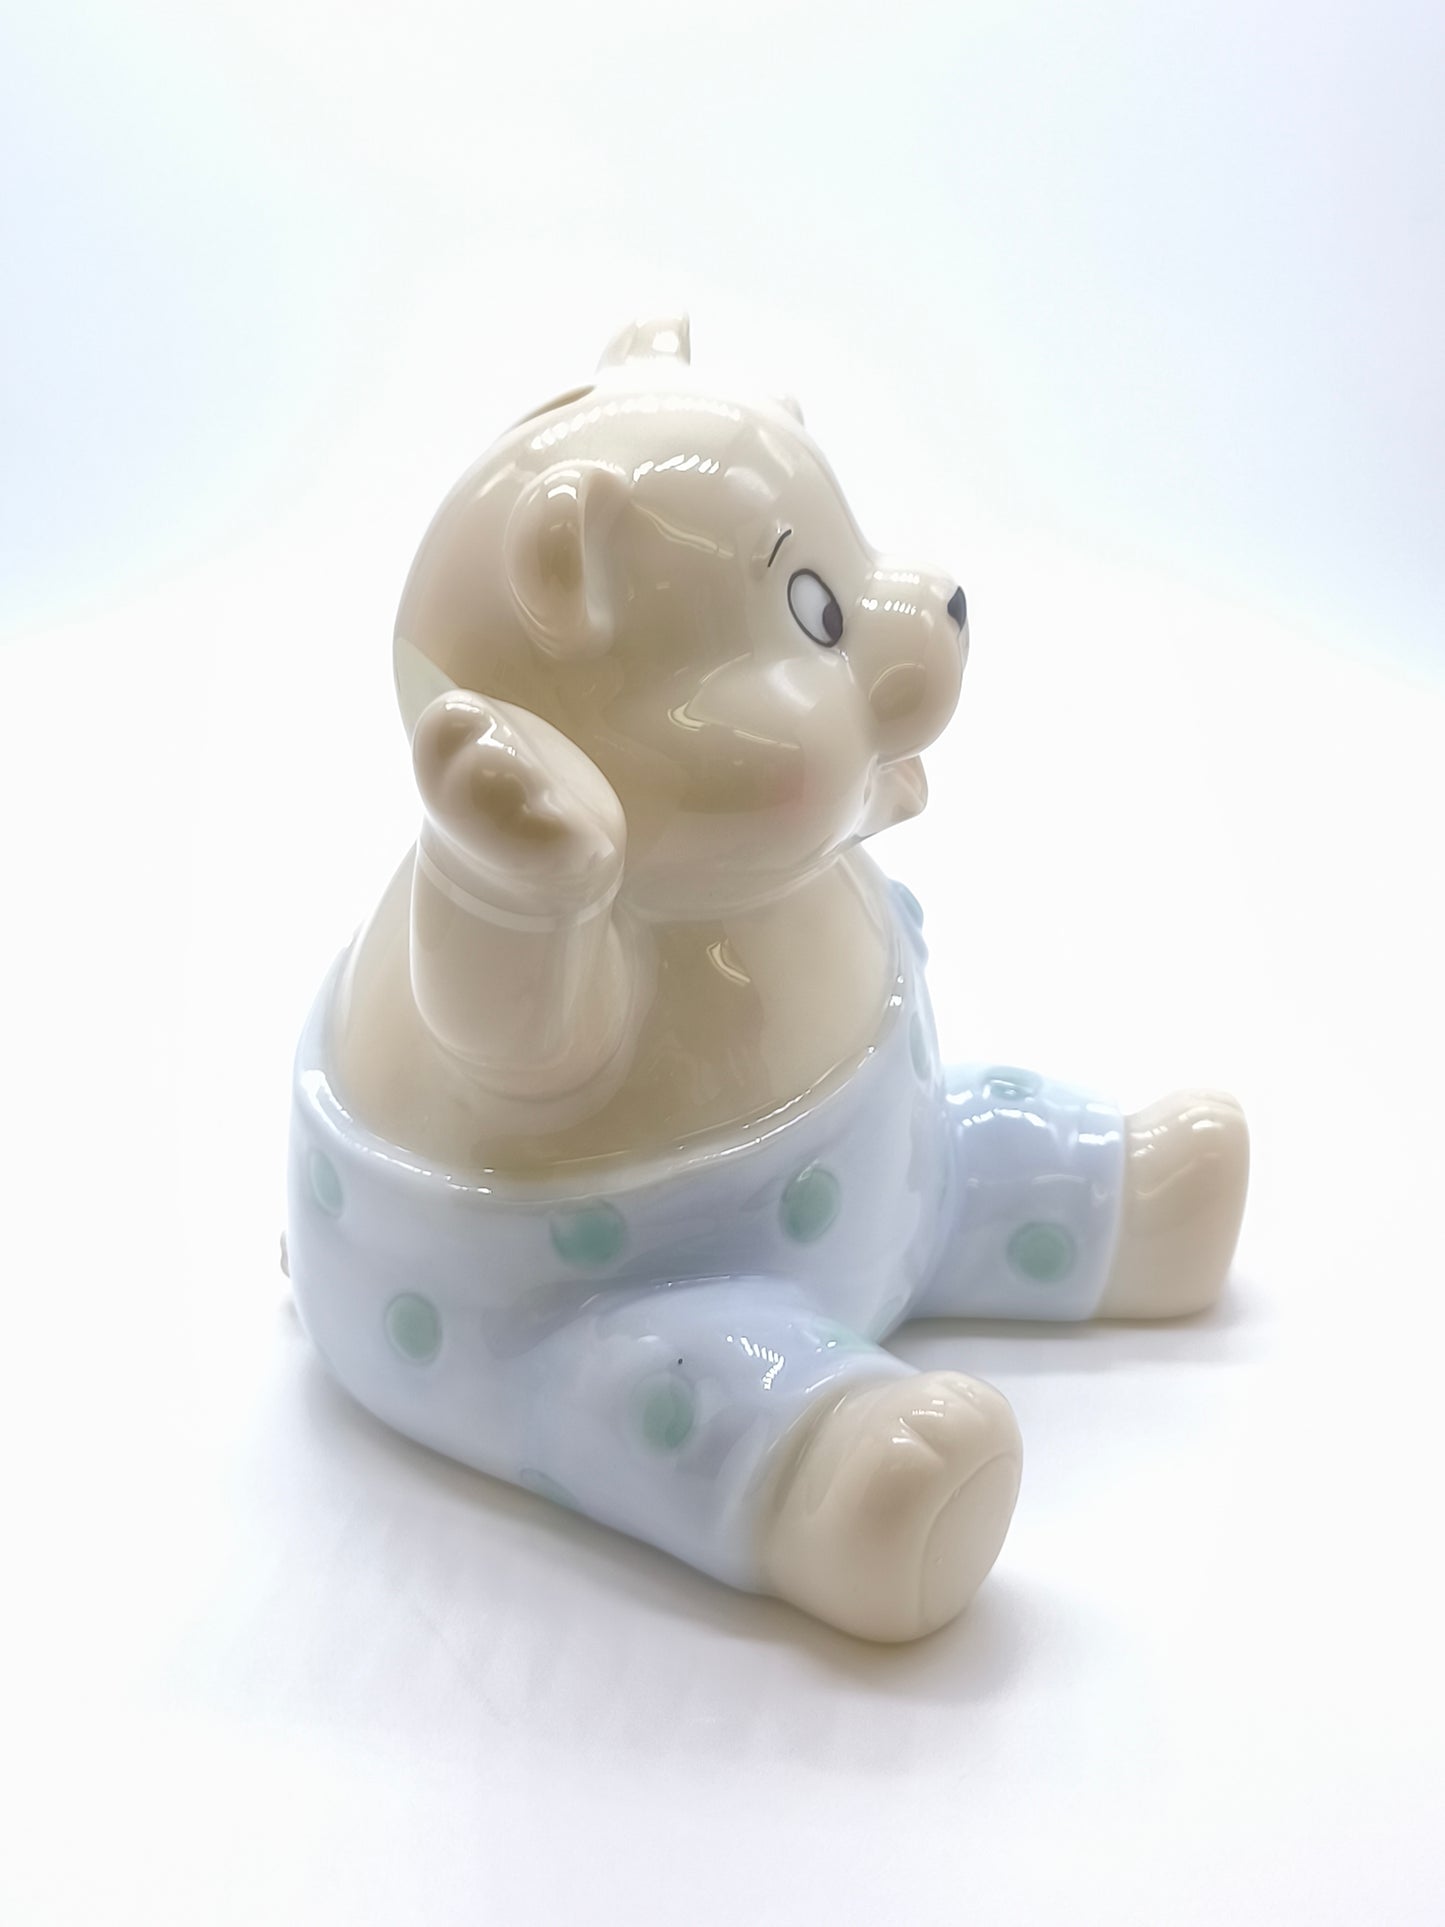 Salvadanaio orsetto in ceramica